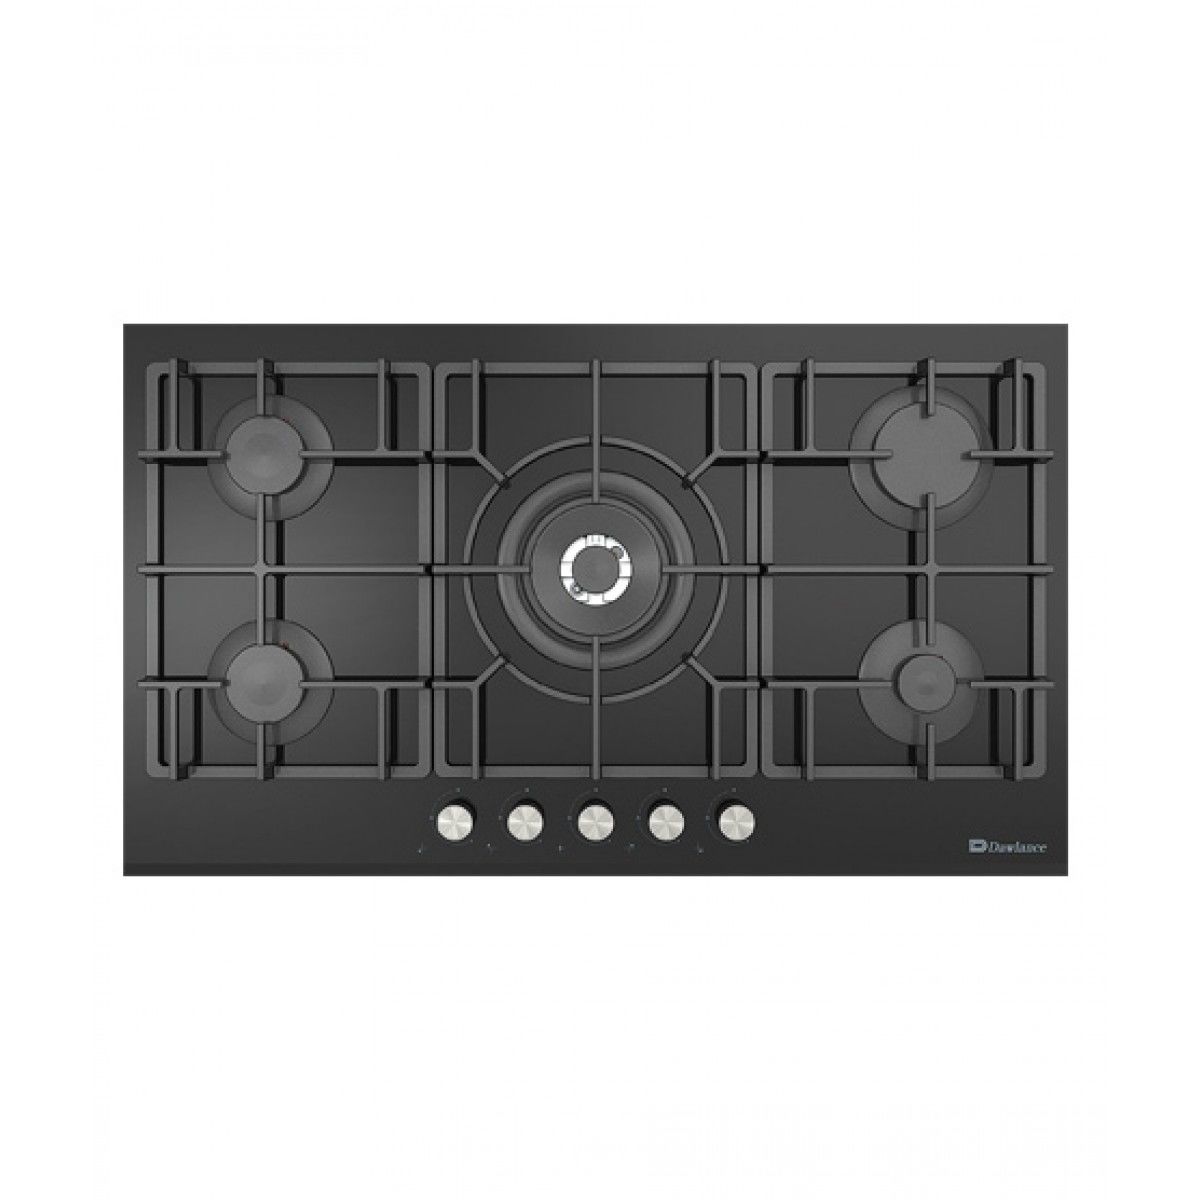 Dawlance Cooking Appliances Burner / Built-in Hob DHG 590 BI A